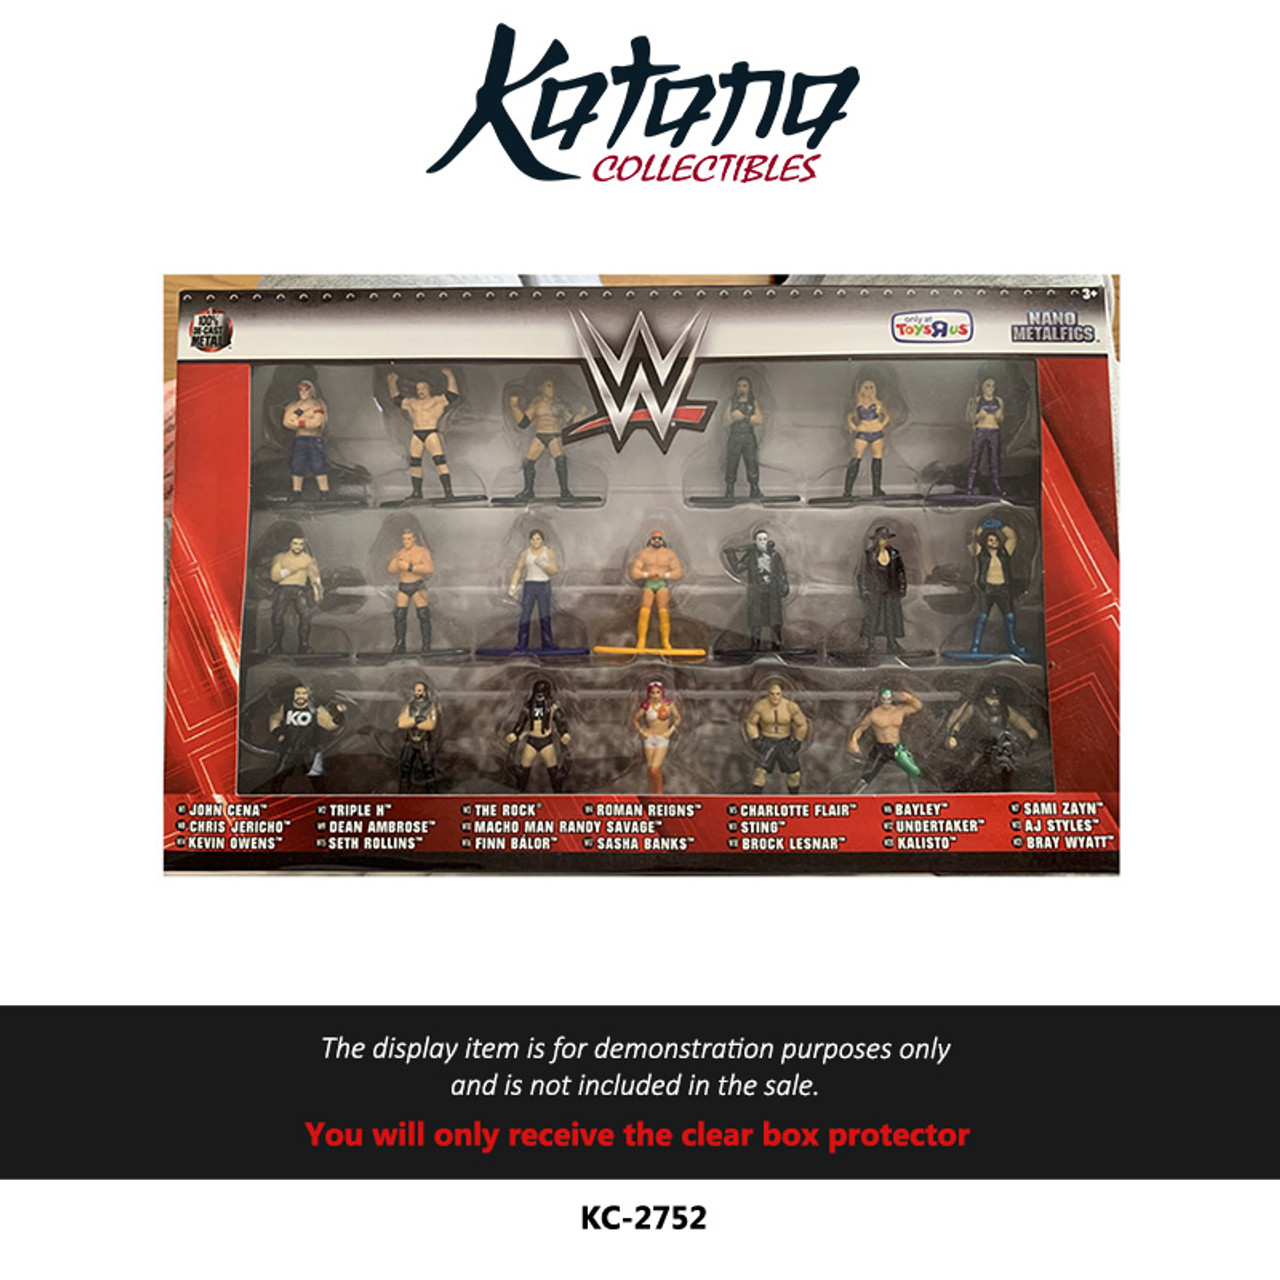 Katana Collectibles Protector For WWE Nano Metalfigs